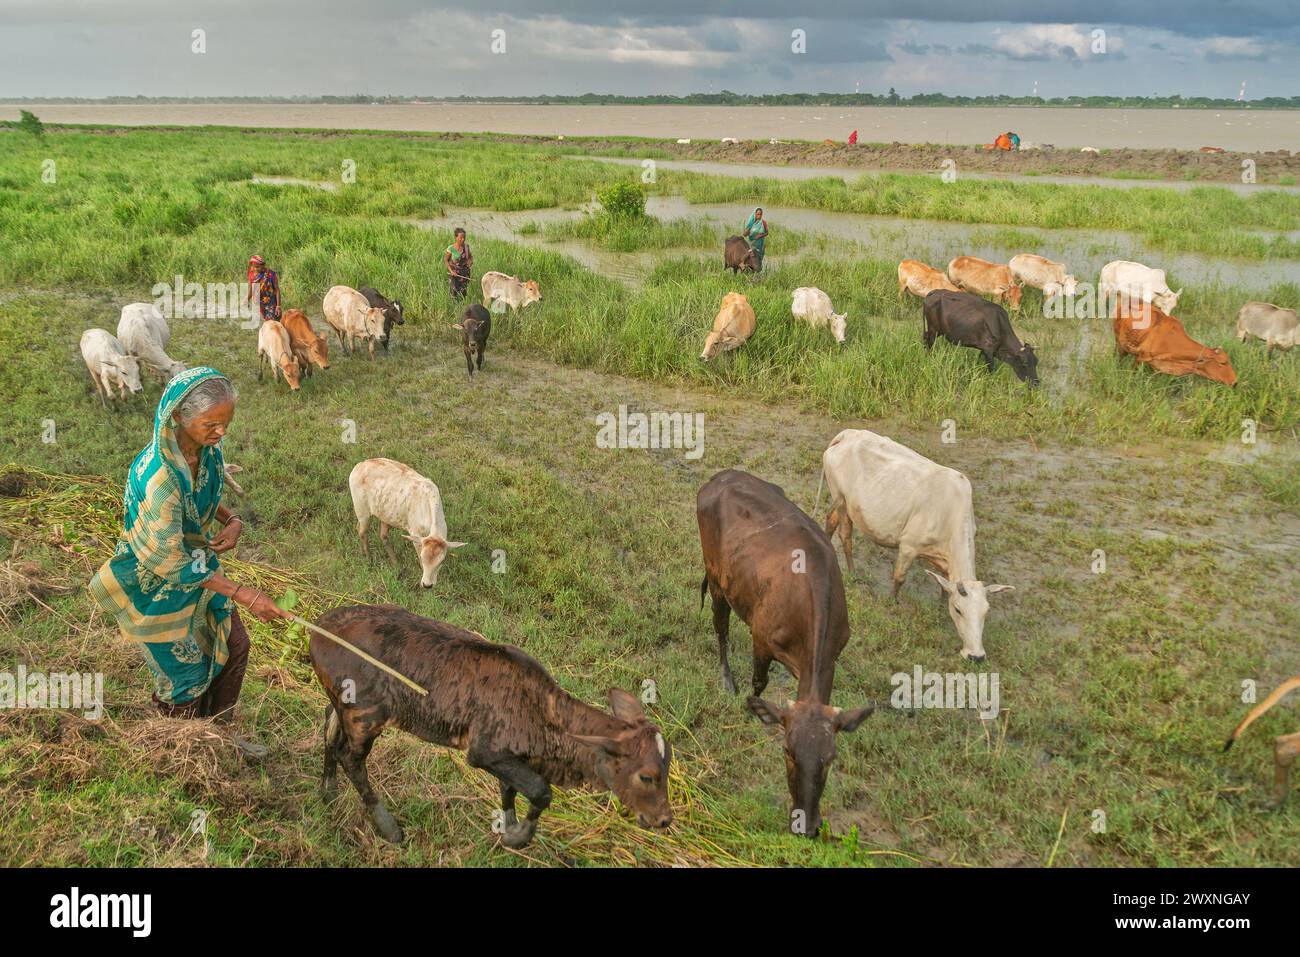 Un agricoltore prepara mungere le mucche a Chalanbil. Si tratta di una delle più grandi zone umide del Bangladesh.Khulna, Bangladesh. Foto Stock